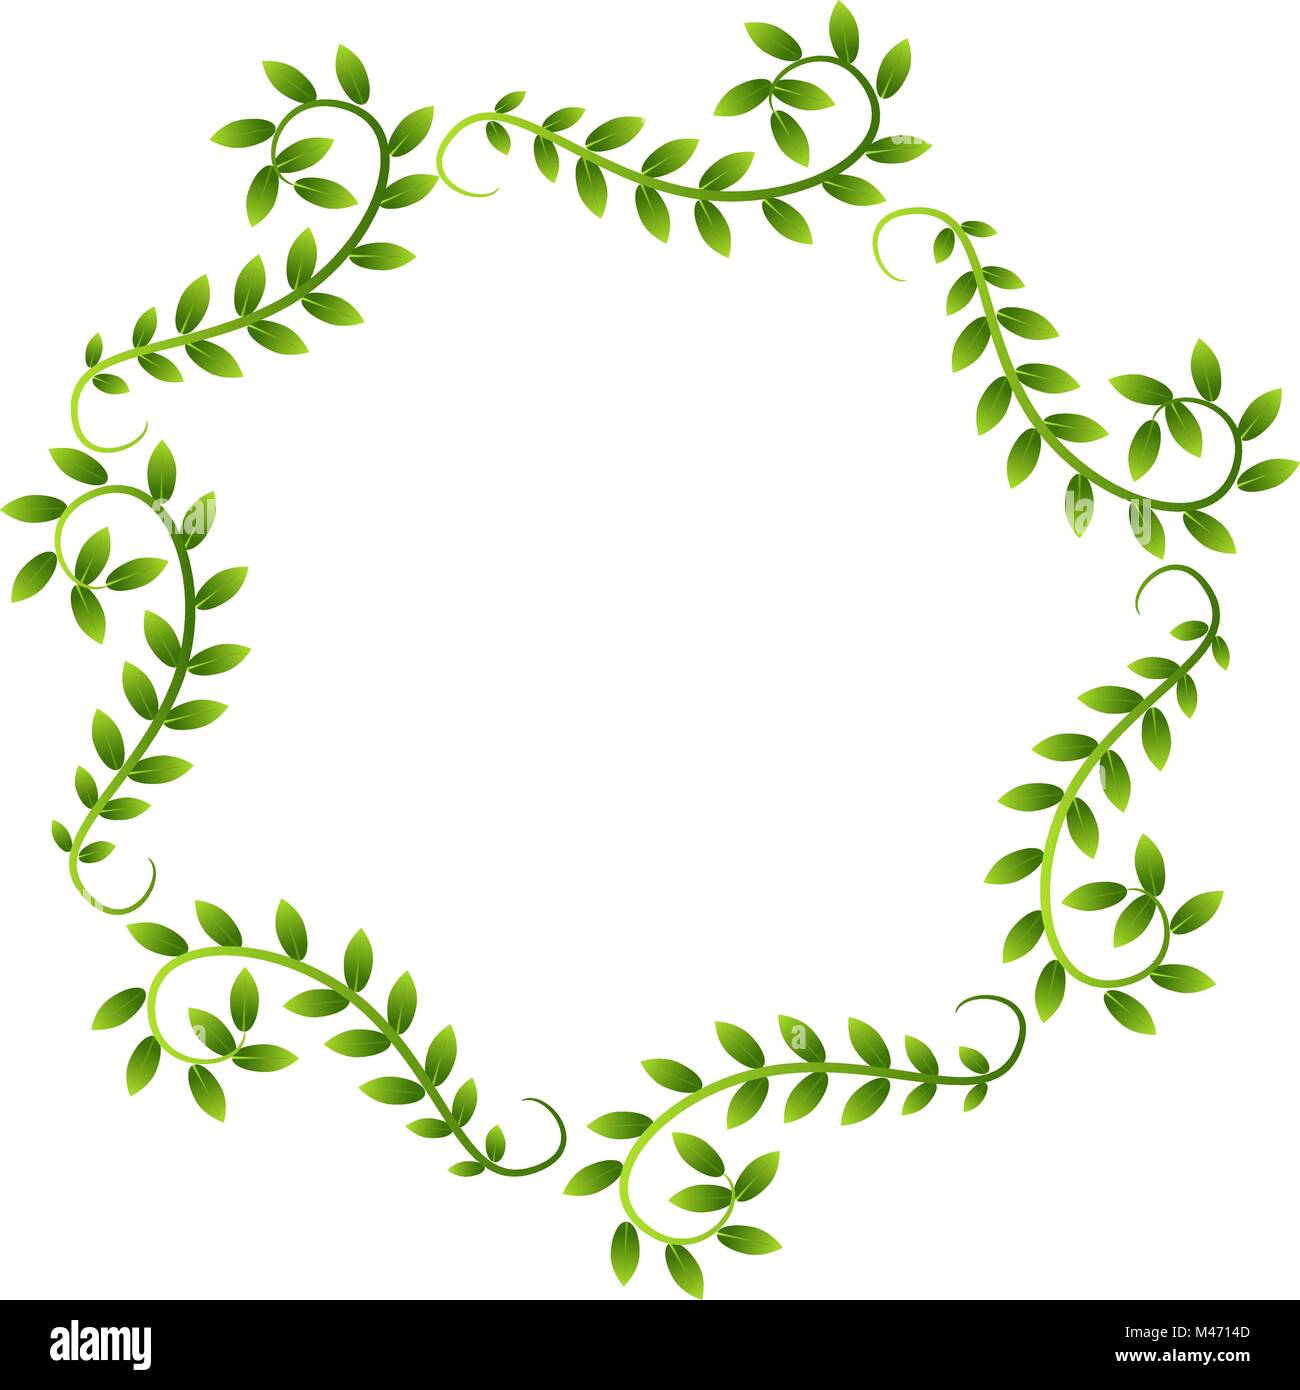 La imagen de una planta de hojas de vid Frame Corona frontera aislado en blanco. Ilustración del Vector